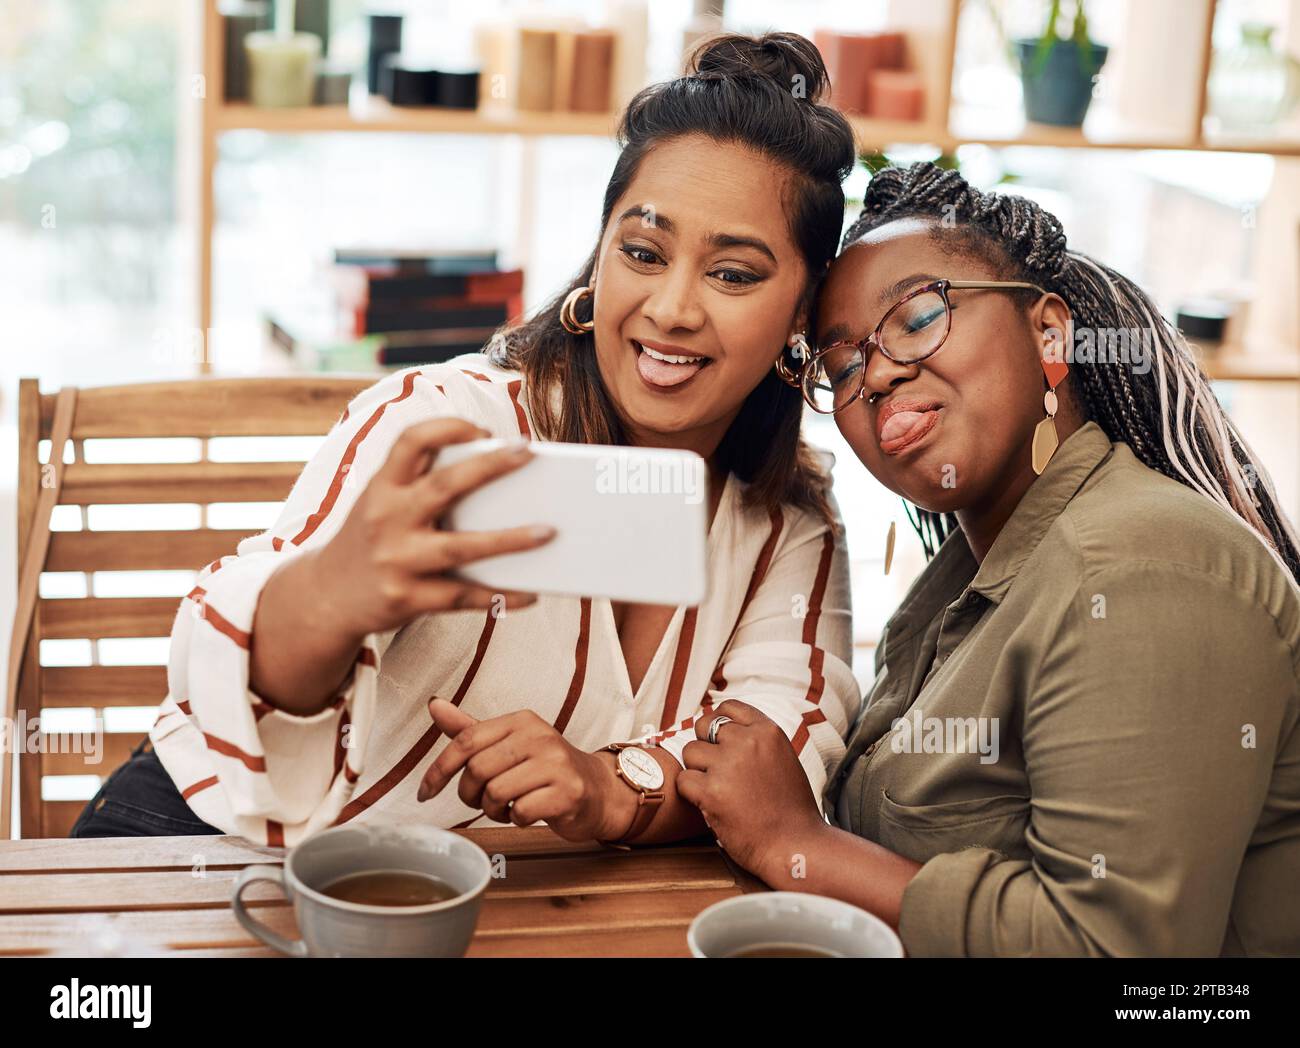 Ich fand meine Seelenverwandte in Dummheit. Zwei junge Frauen machen Selfies im Café Stockfoto